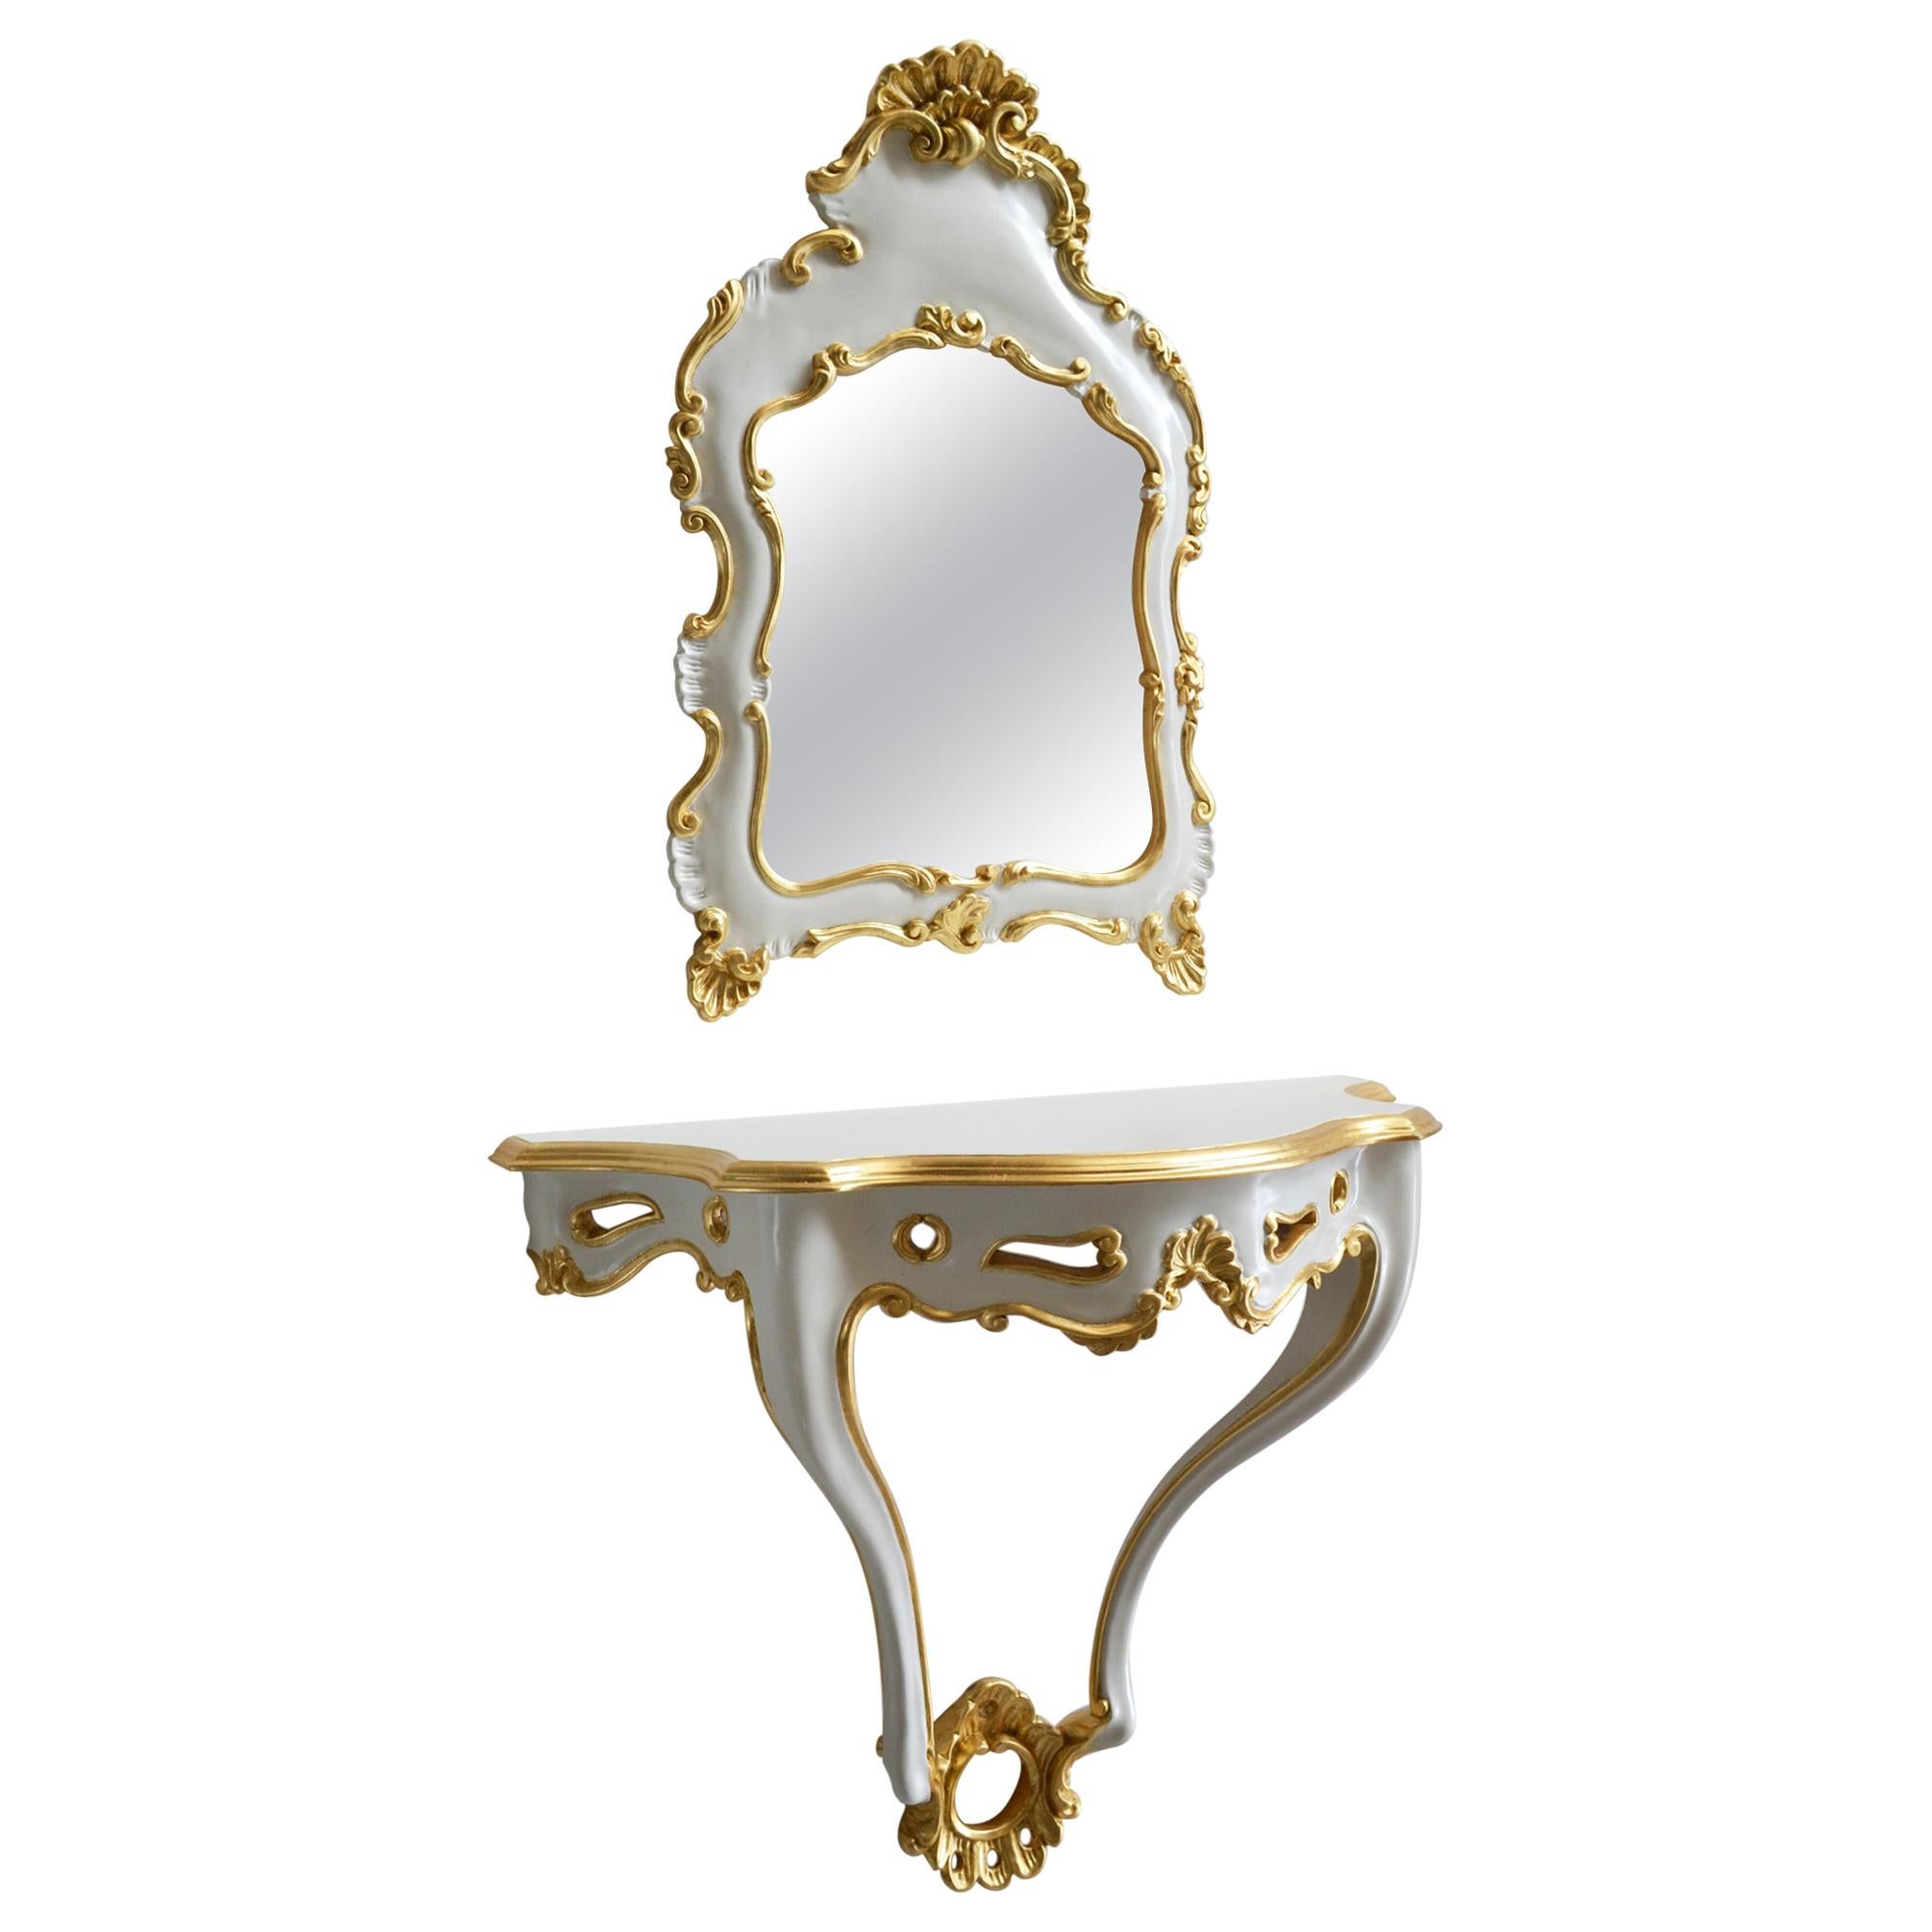 Konsole und Spiegel  Handgeschnitzt in Italien von Cupioli mit Blattgolddetails